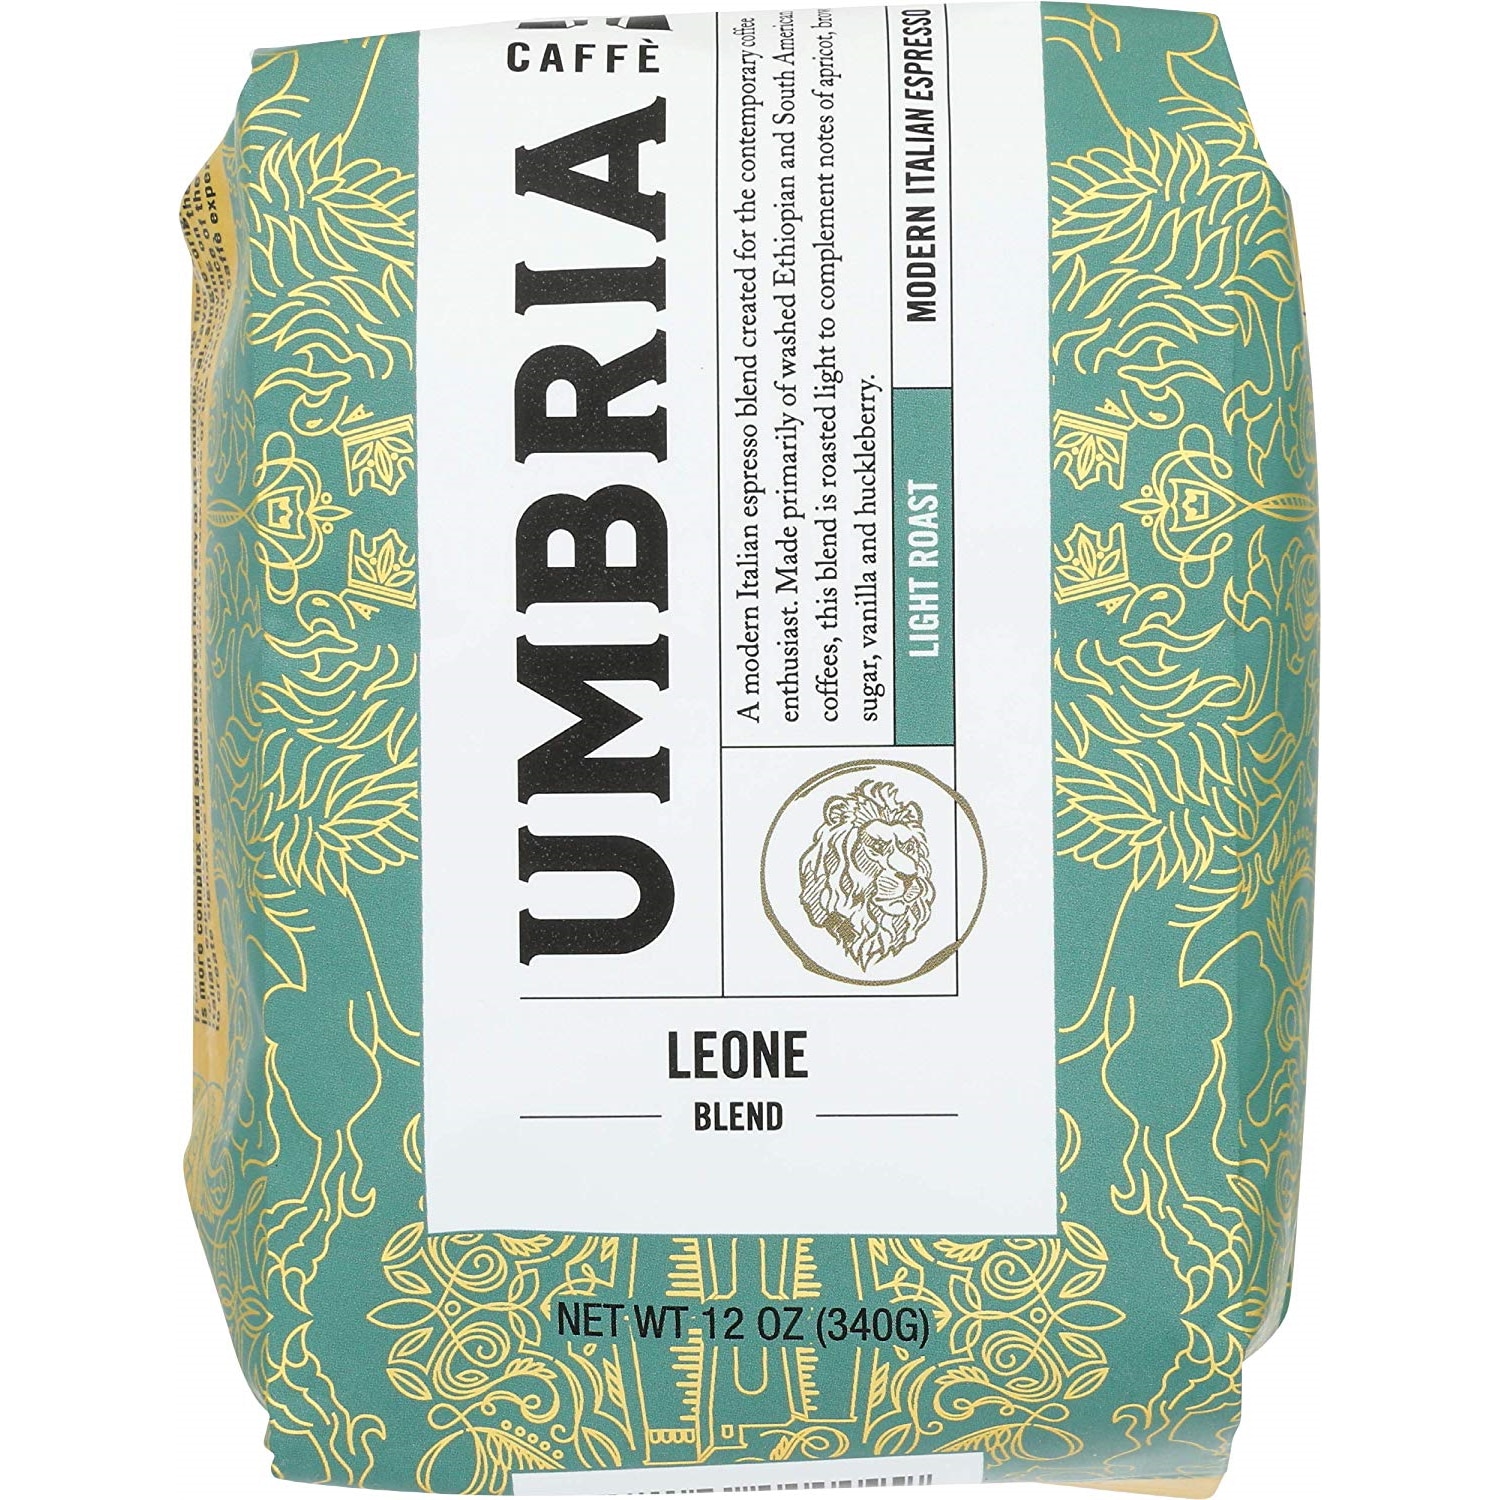 Caffe Umbria Leone Blend